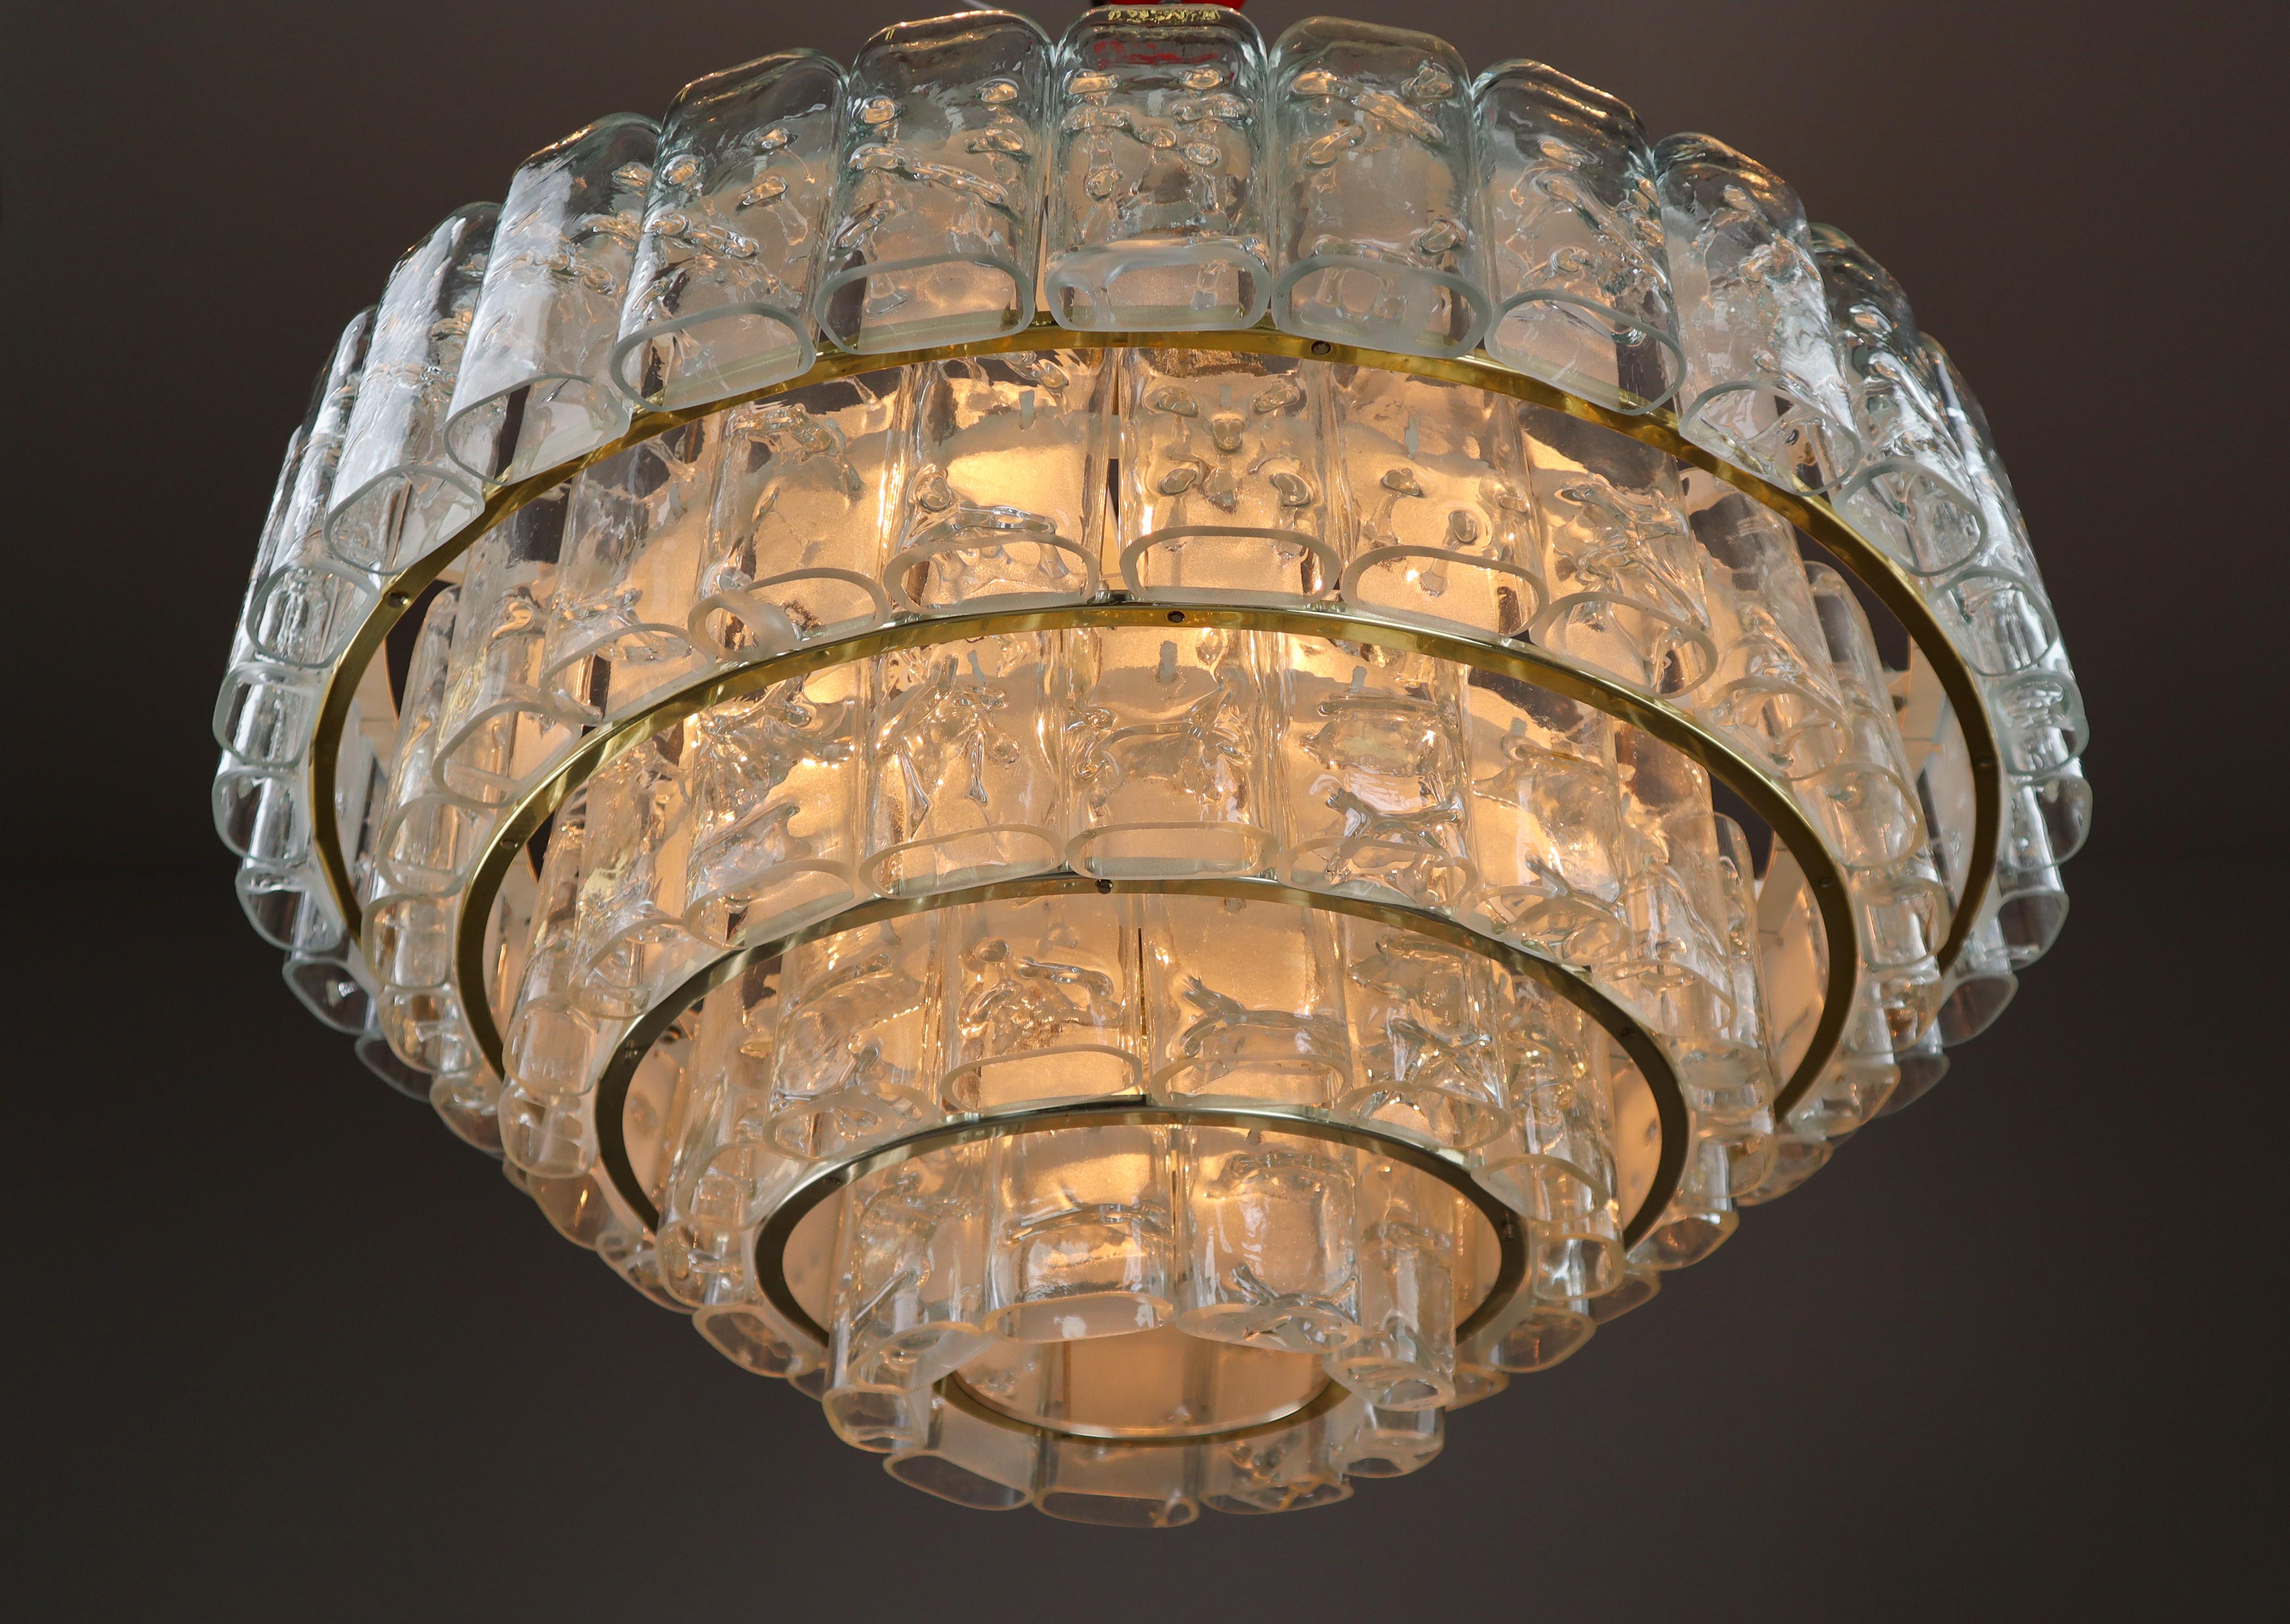 Großer Midcentury-Modern-Kronleuchter von Doria Leuchten, Deutschland, 1960er Jahre.

Die Leuchte besteht aus Schichten mit mehreren mundgeblasenen, strukturierten Glasröhren (und fünf Reserven), die auf einem in konzentrischen Ringen angeordneten